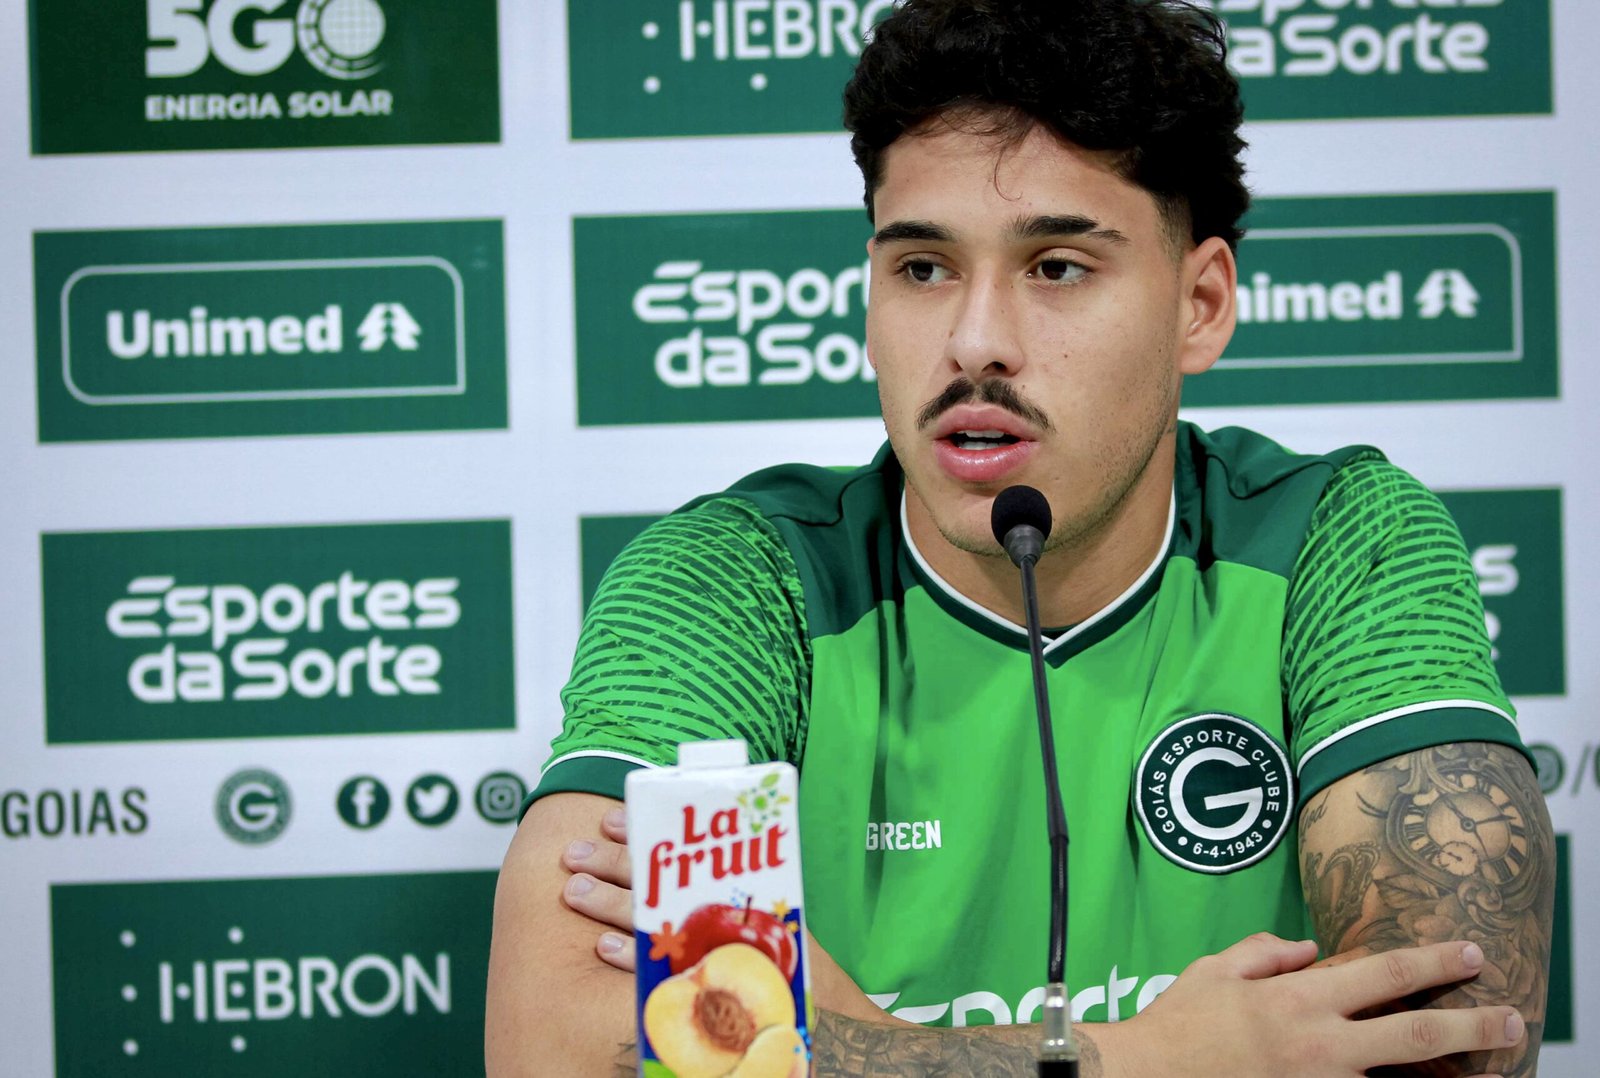 Para entrar na história! Lucas Halter fala de ansiedade de conquistar primeiro título pelo Goiás, mas prega cautela diante do Paysandu pela Copa Verde: “Jogo é jogado”